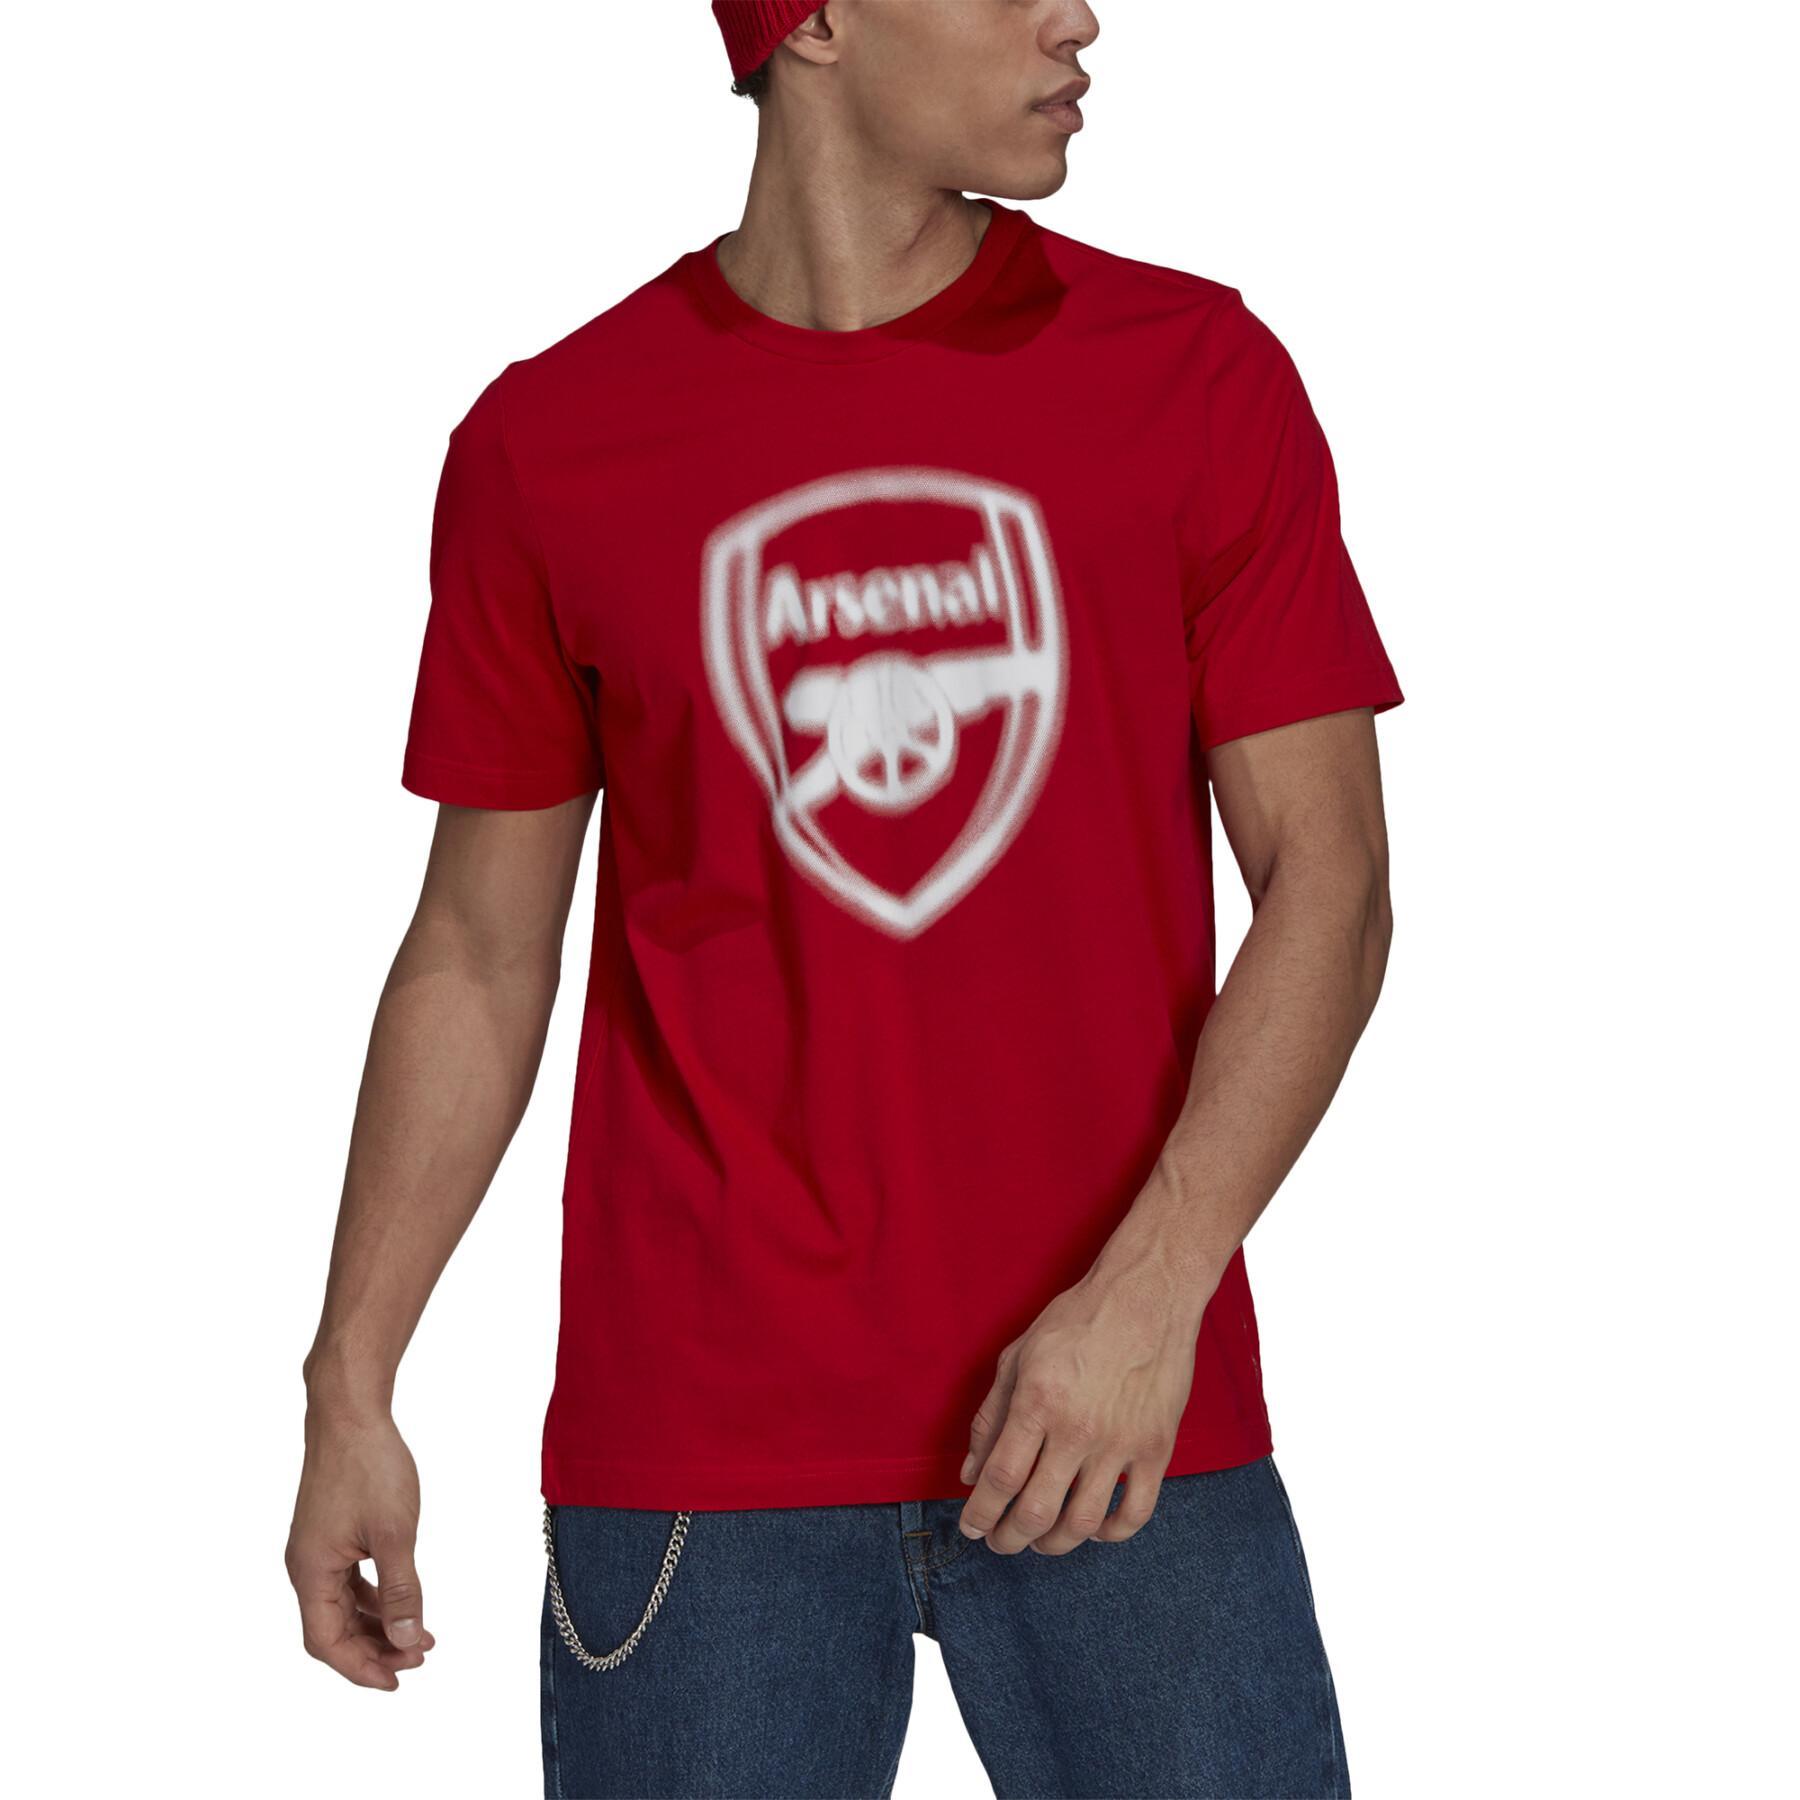 Koszulka Arsenal